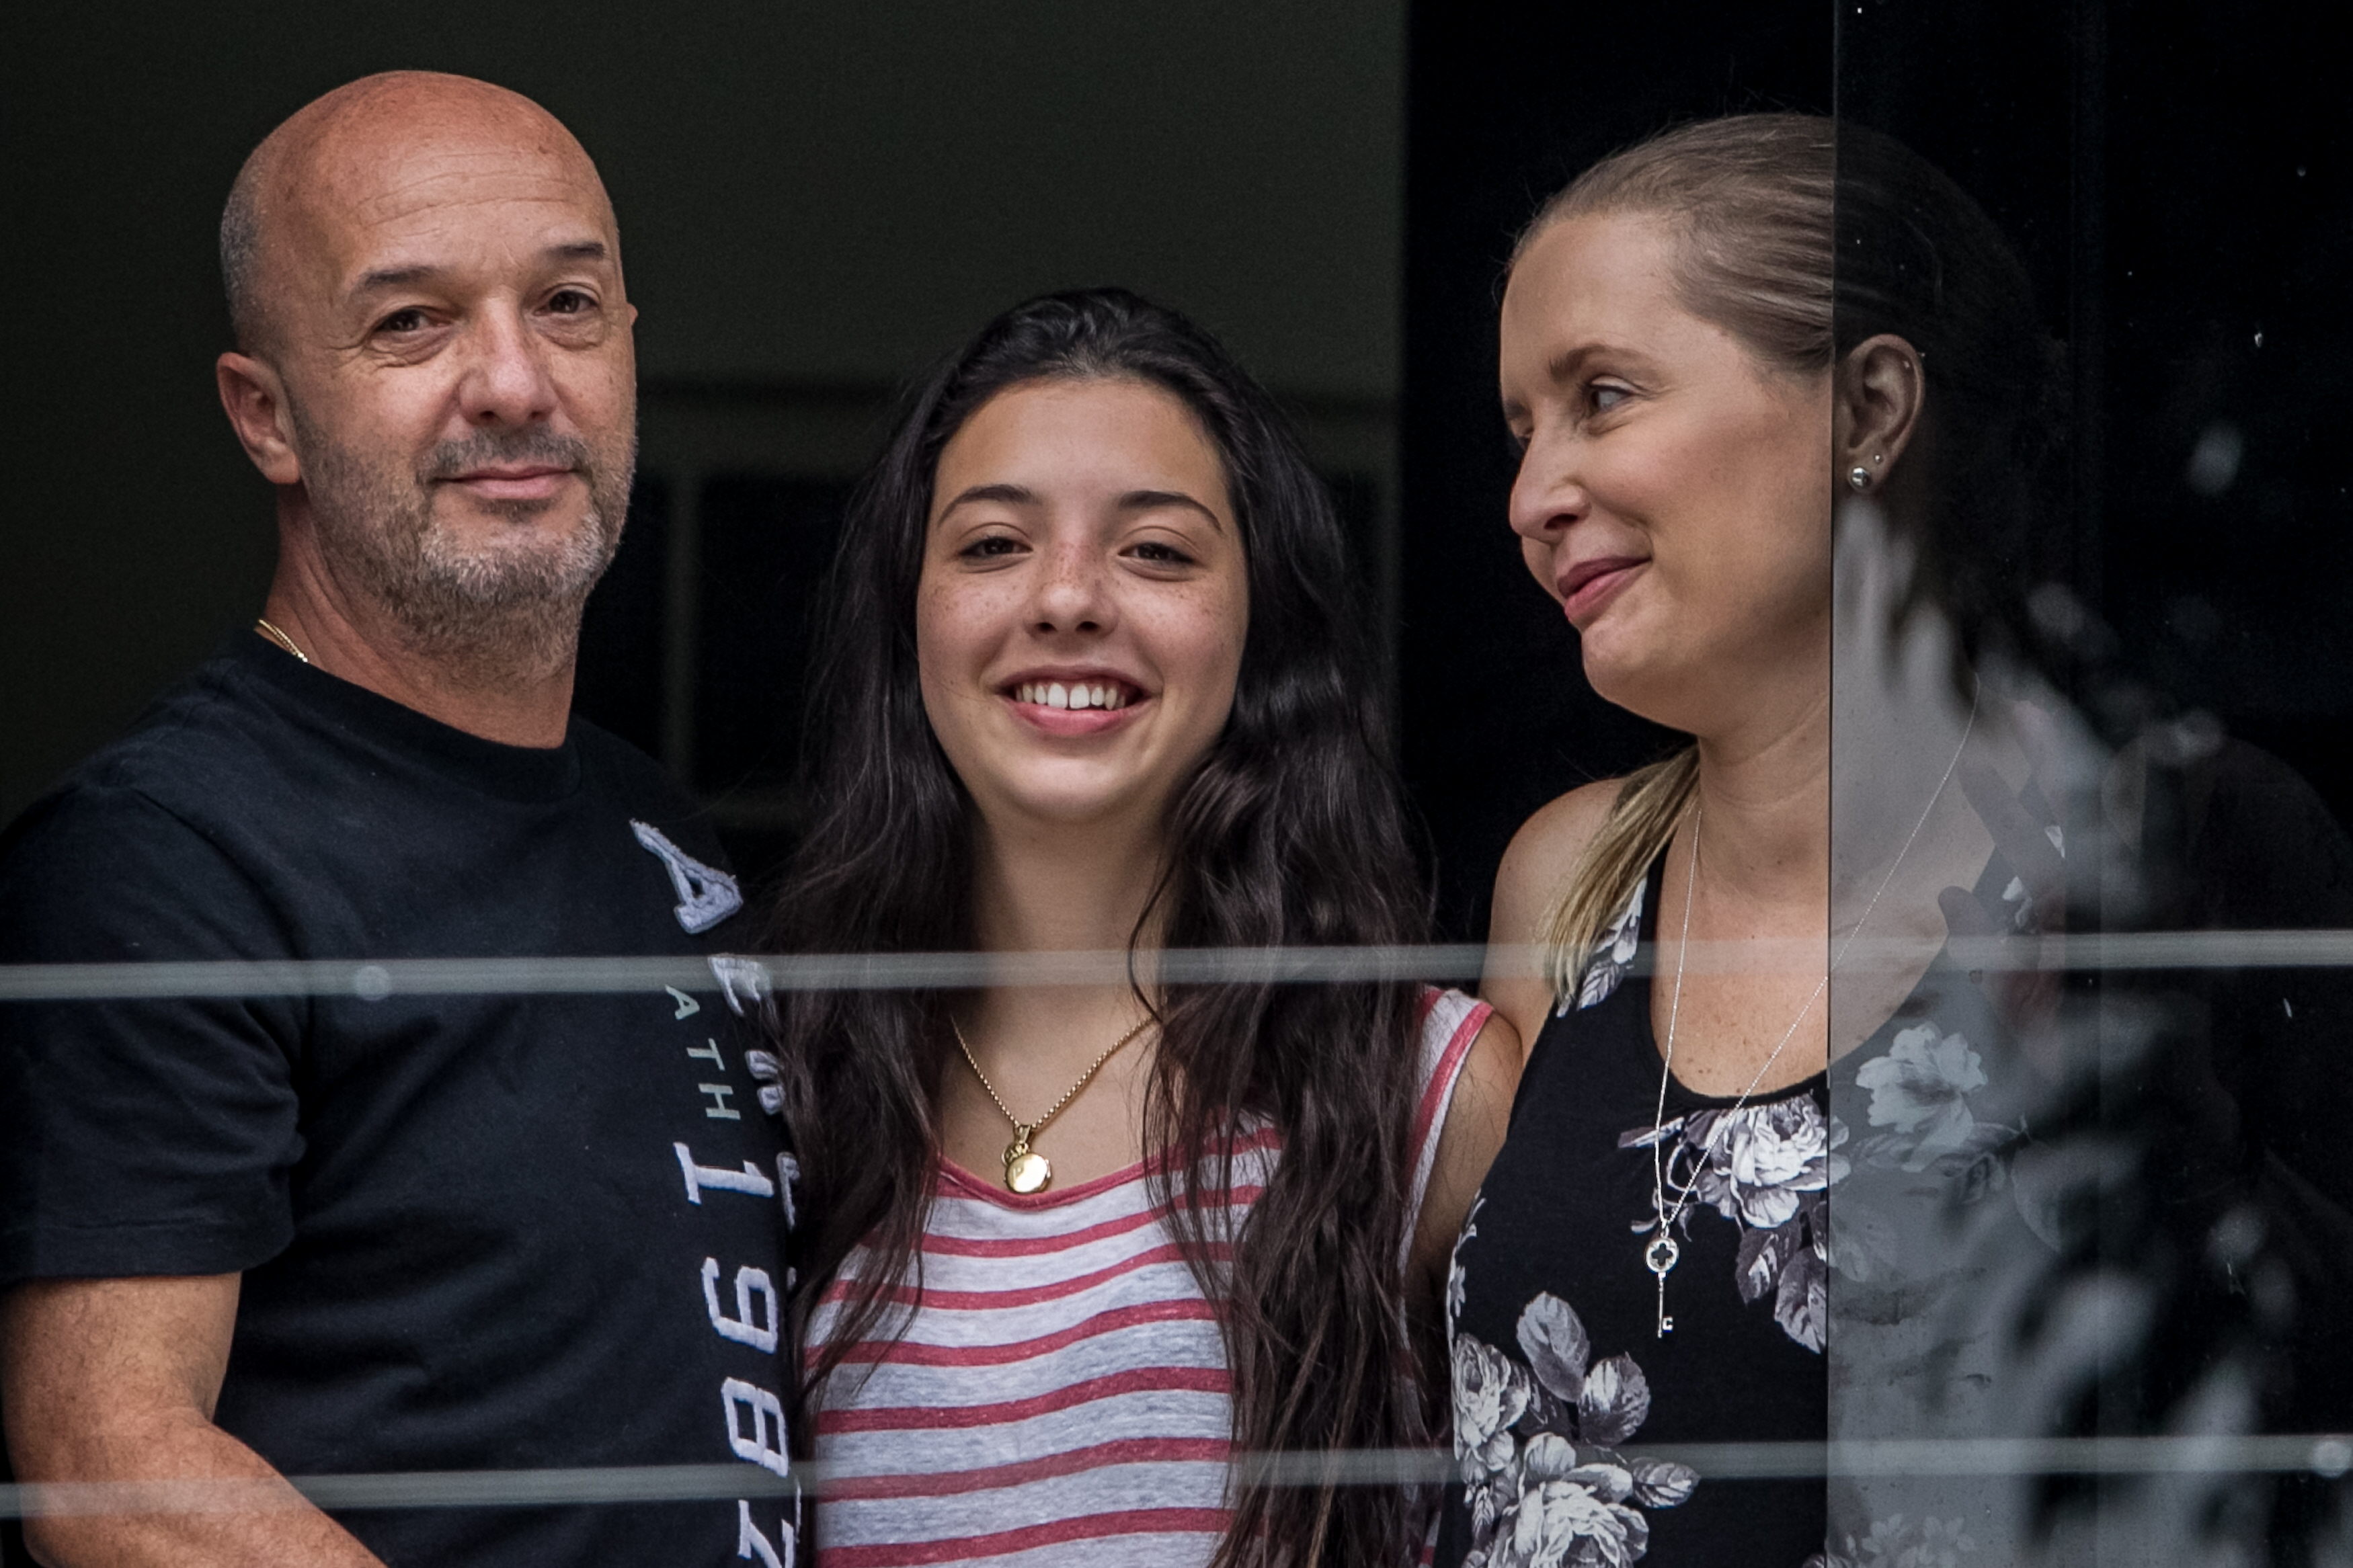 Después de nueve años tras las rejas, Simonovis vuelve con su familia (Fotos)